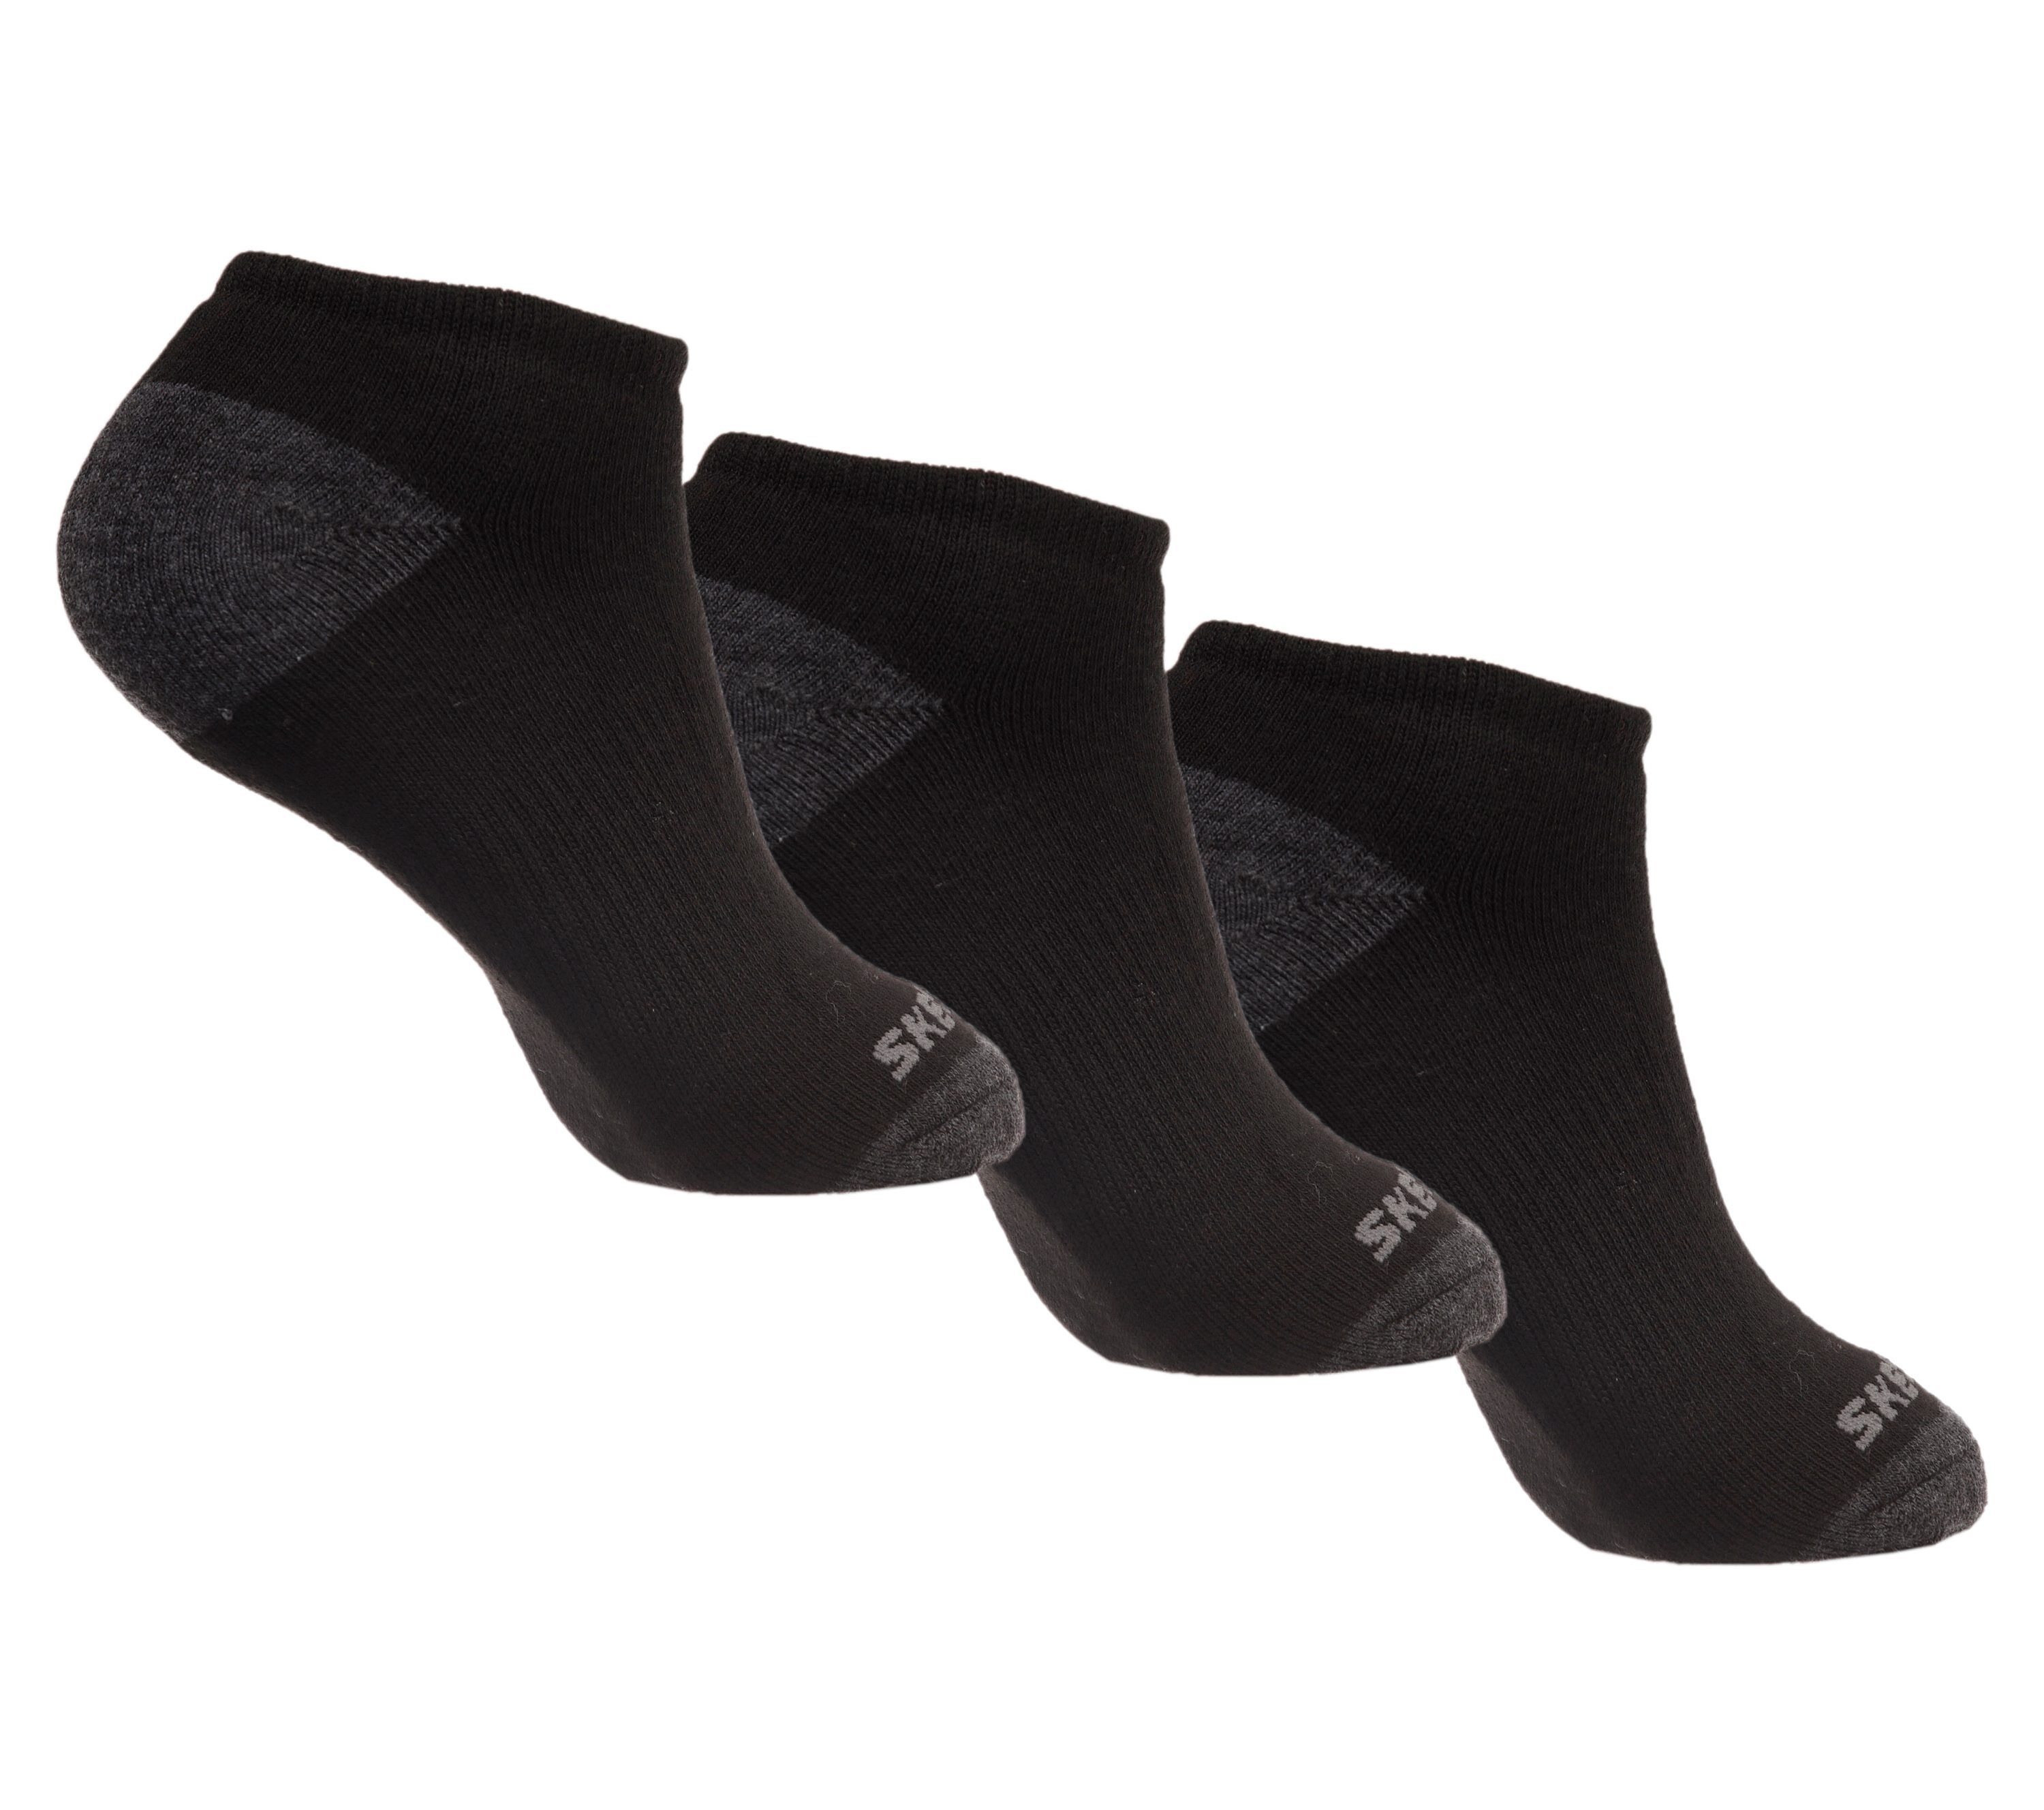 Skechers 6 Pack Low Cut Walking Socks | Mall of America®